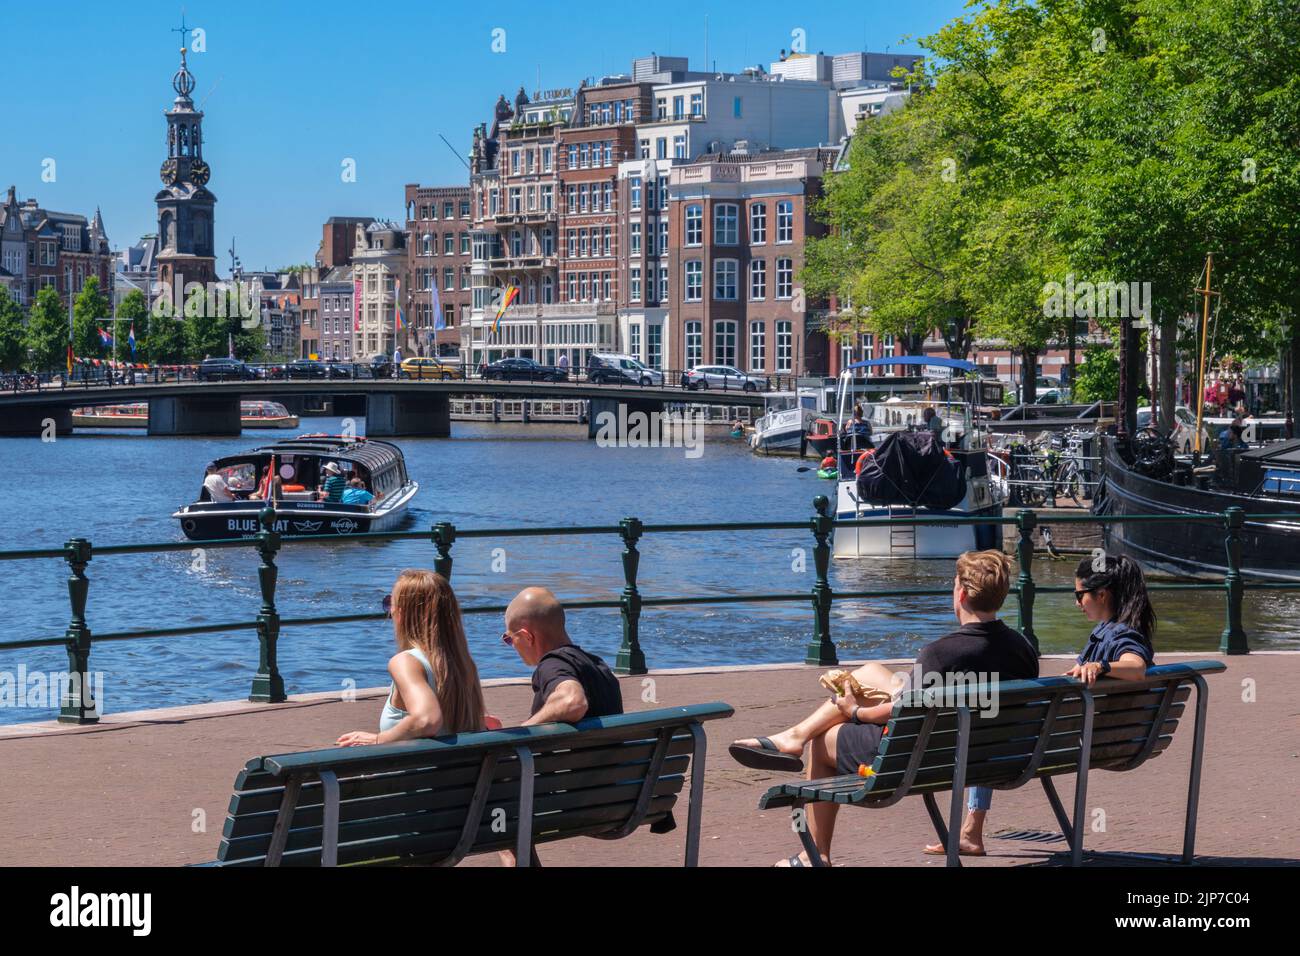 Ámsterdam, Países Bajos - 22 de junio de 2022: Gente sentada en bancos en la orilla del río Amstel Foto de stock